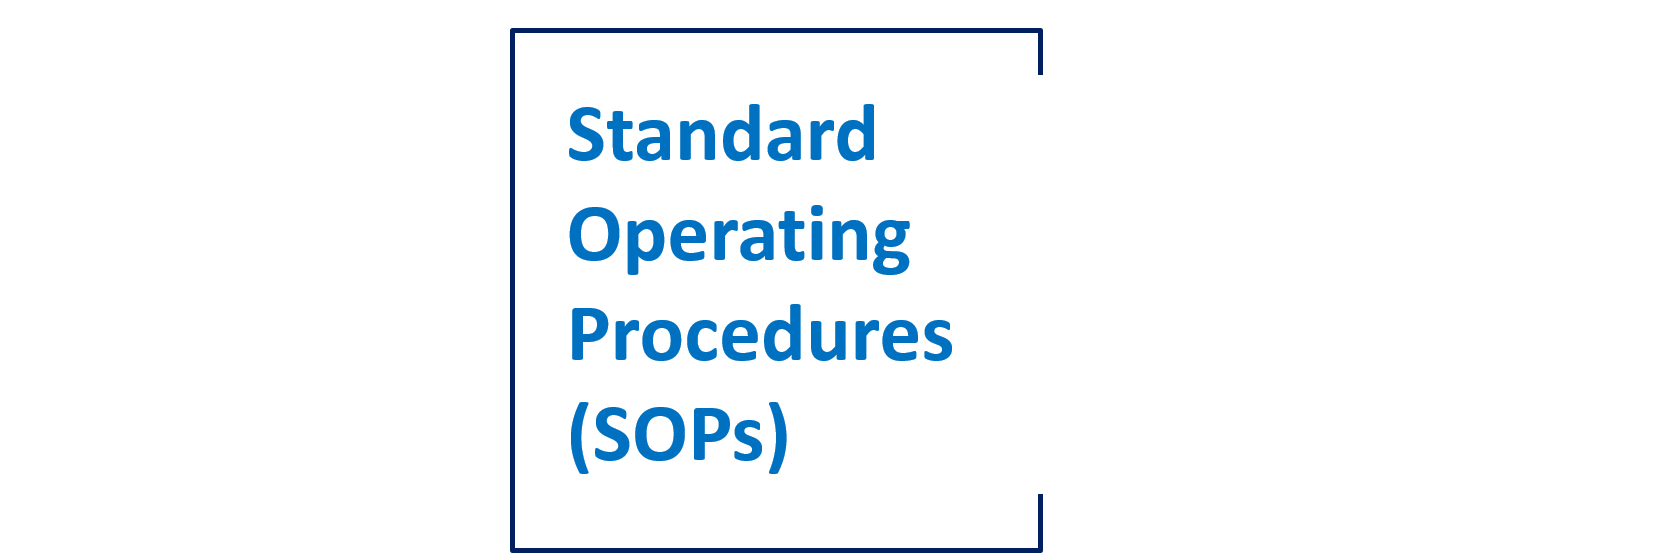 Standard Operating Procedures 